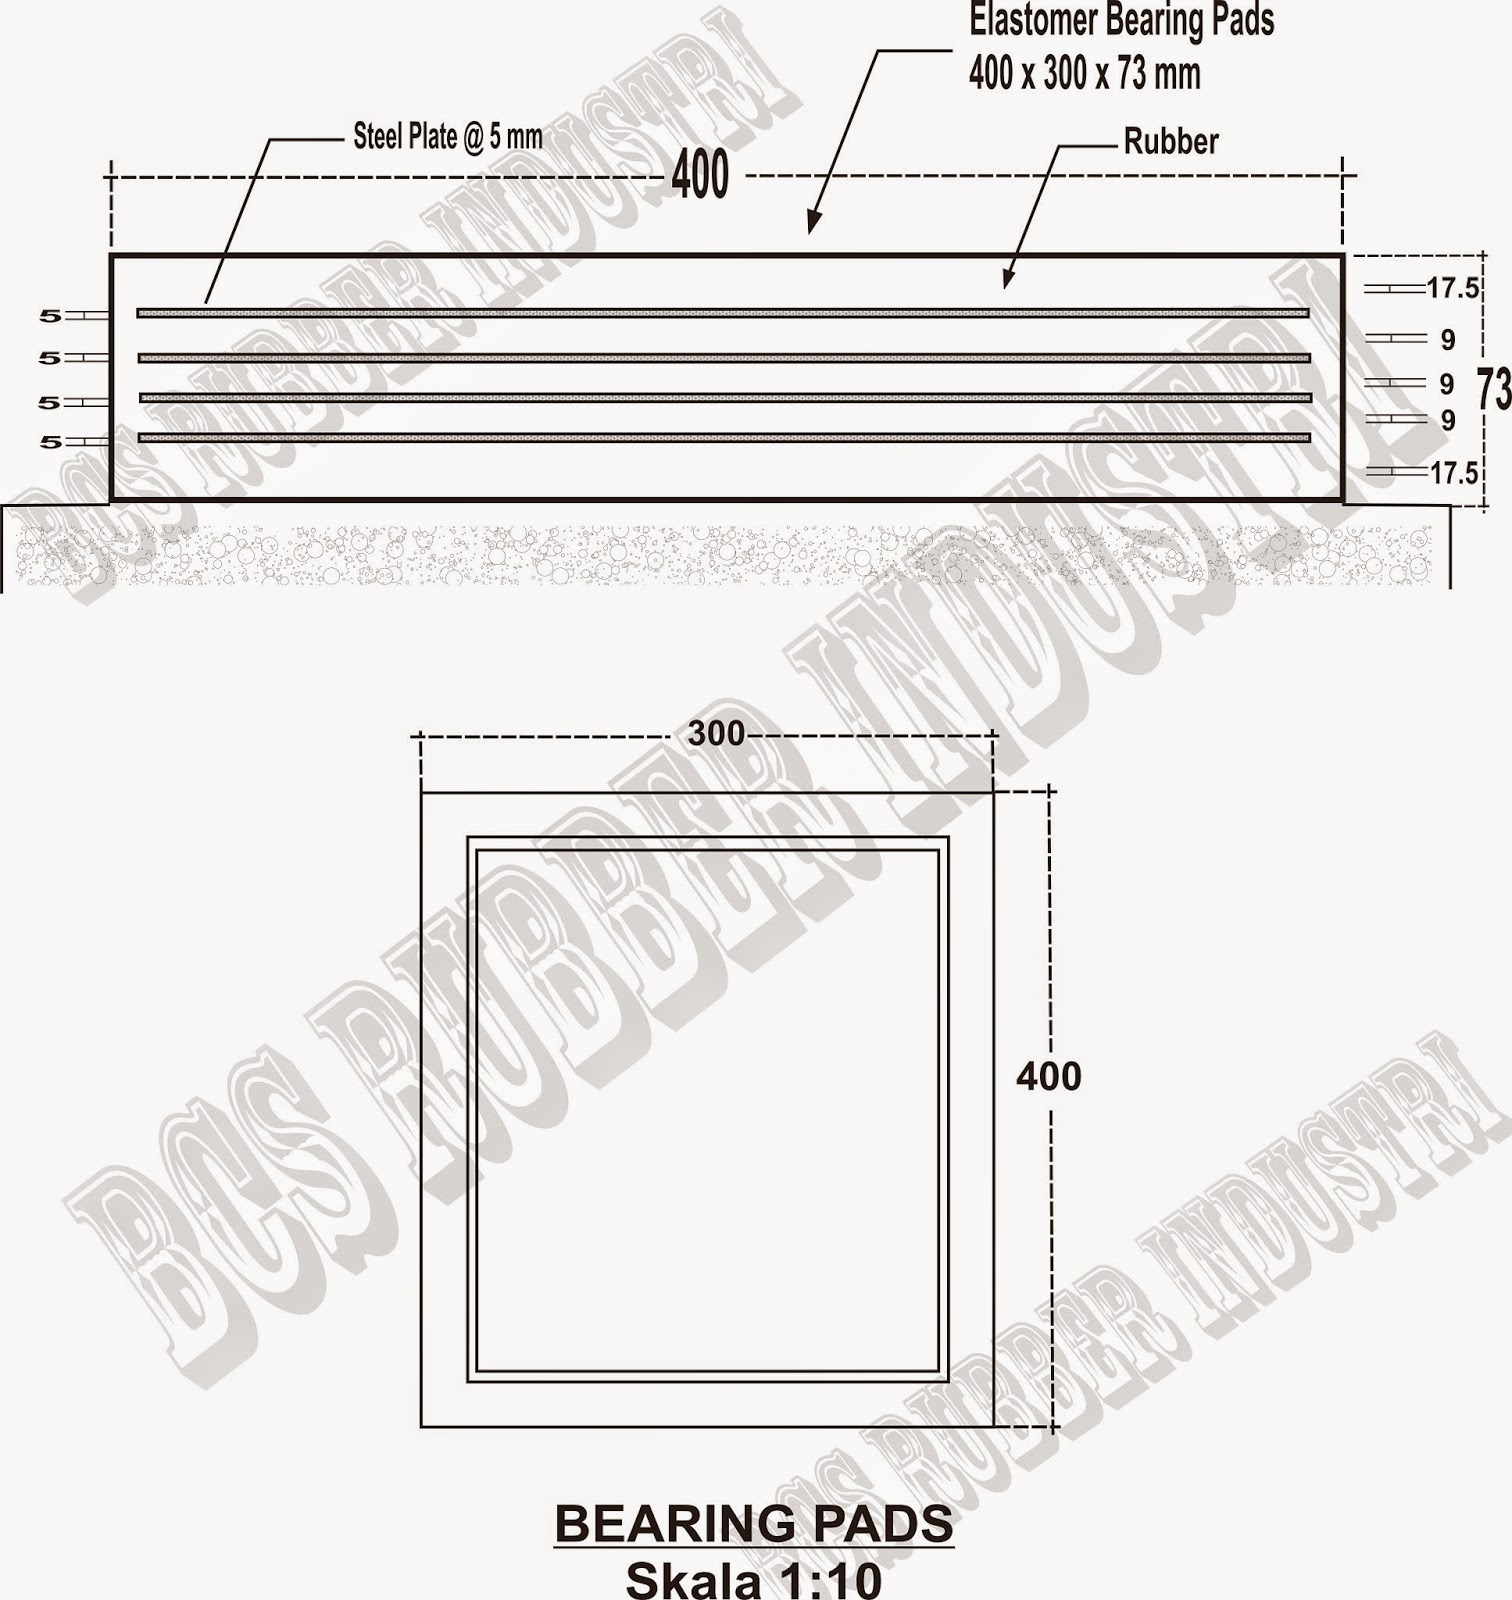  Elastomer Bearing Pads - BCS Rubber Industry,Elastomeric Bearing Pads,Bantalan Jembatan,Karet Bantalan Jembatan,